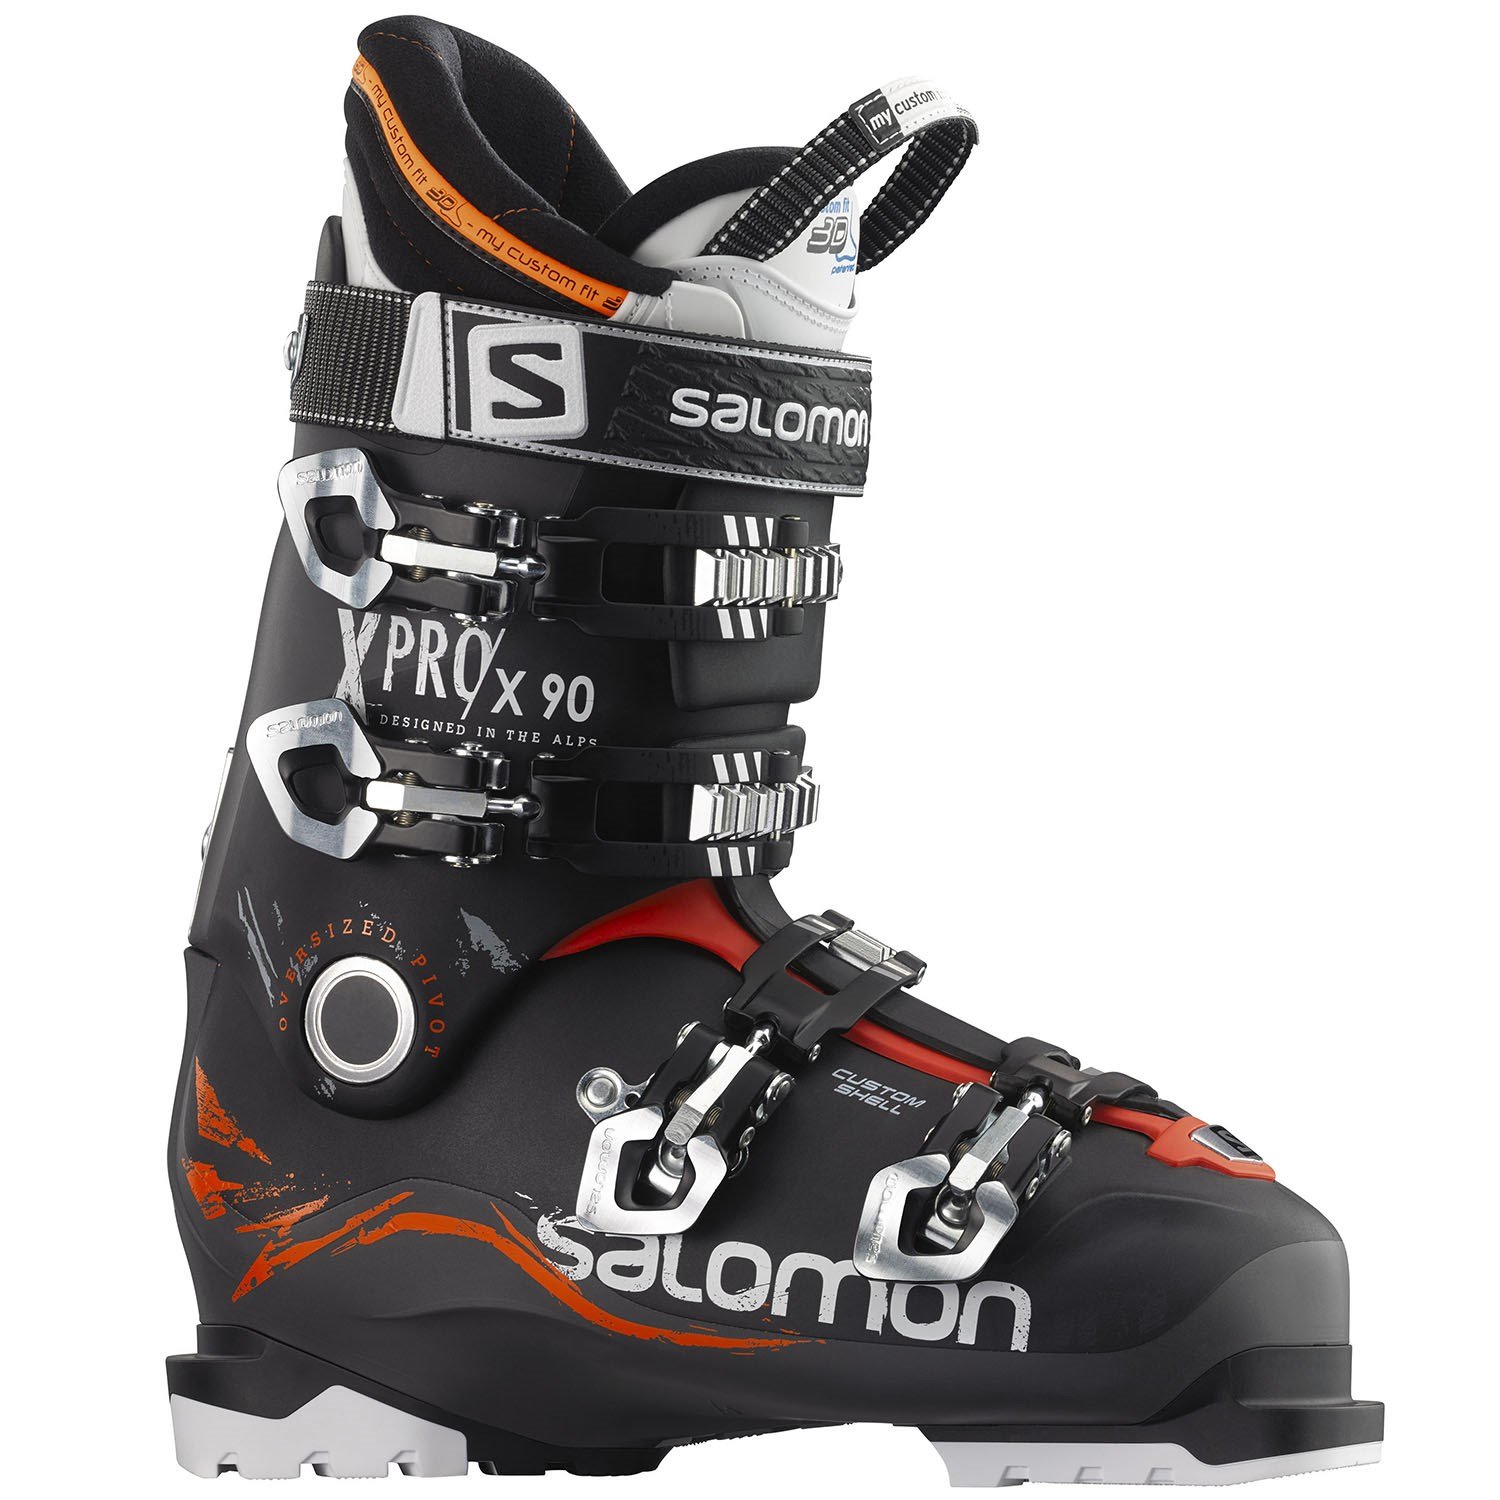 Salomon X Pro X 90 Ski Boots 2016 | evo